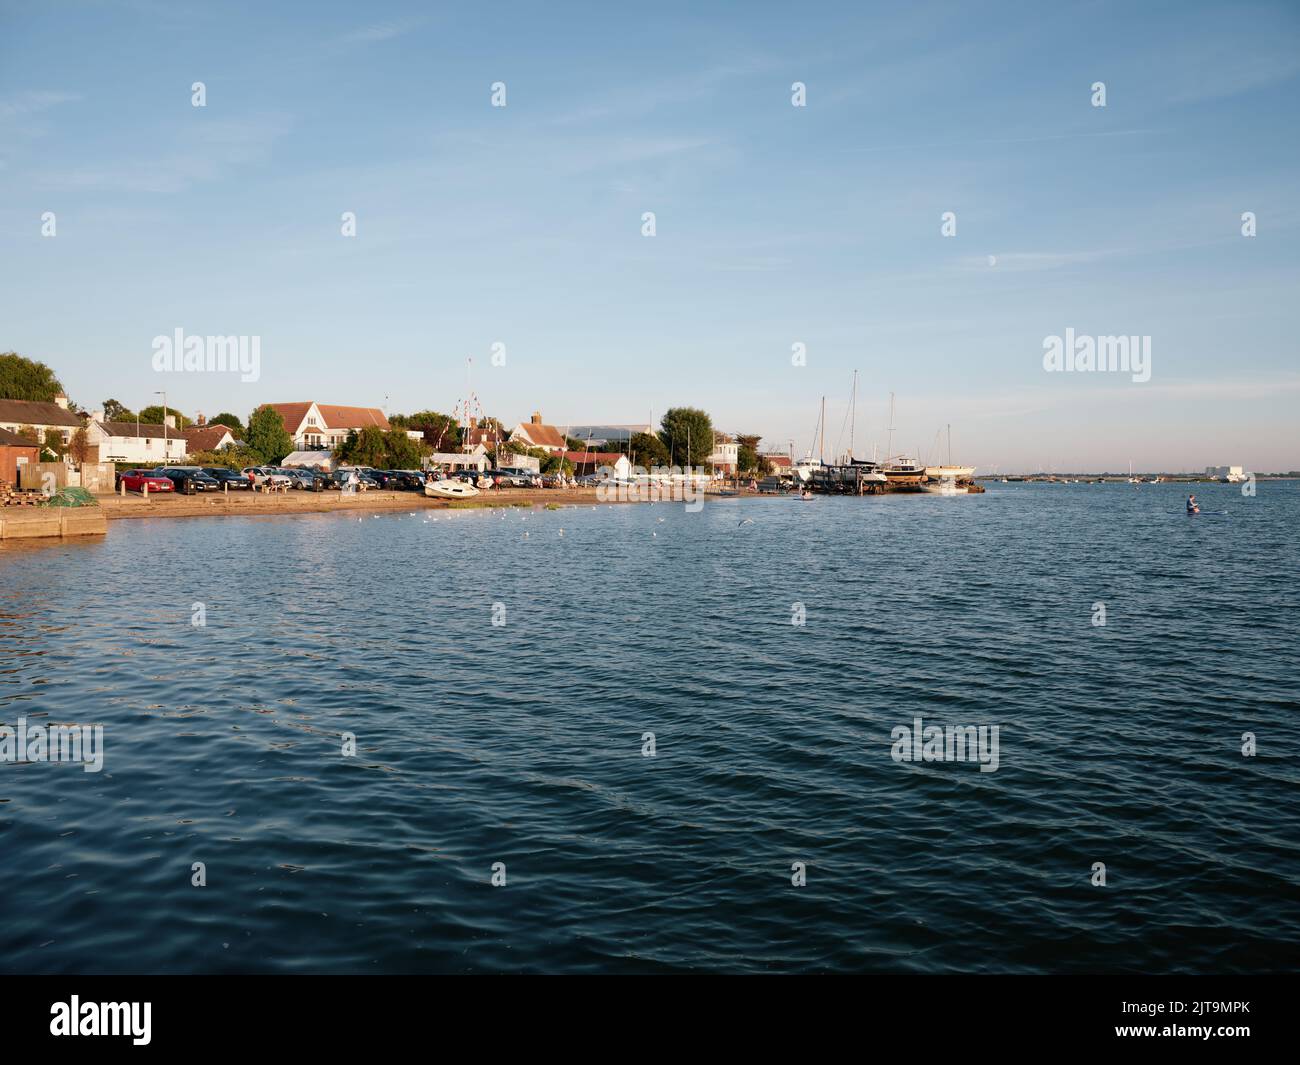 Le port en bord de mer paysage d'été de West Mersea Harbour, Mersea Island, Essex Angleterre Royaume-Uni Banque D'Images